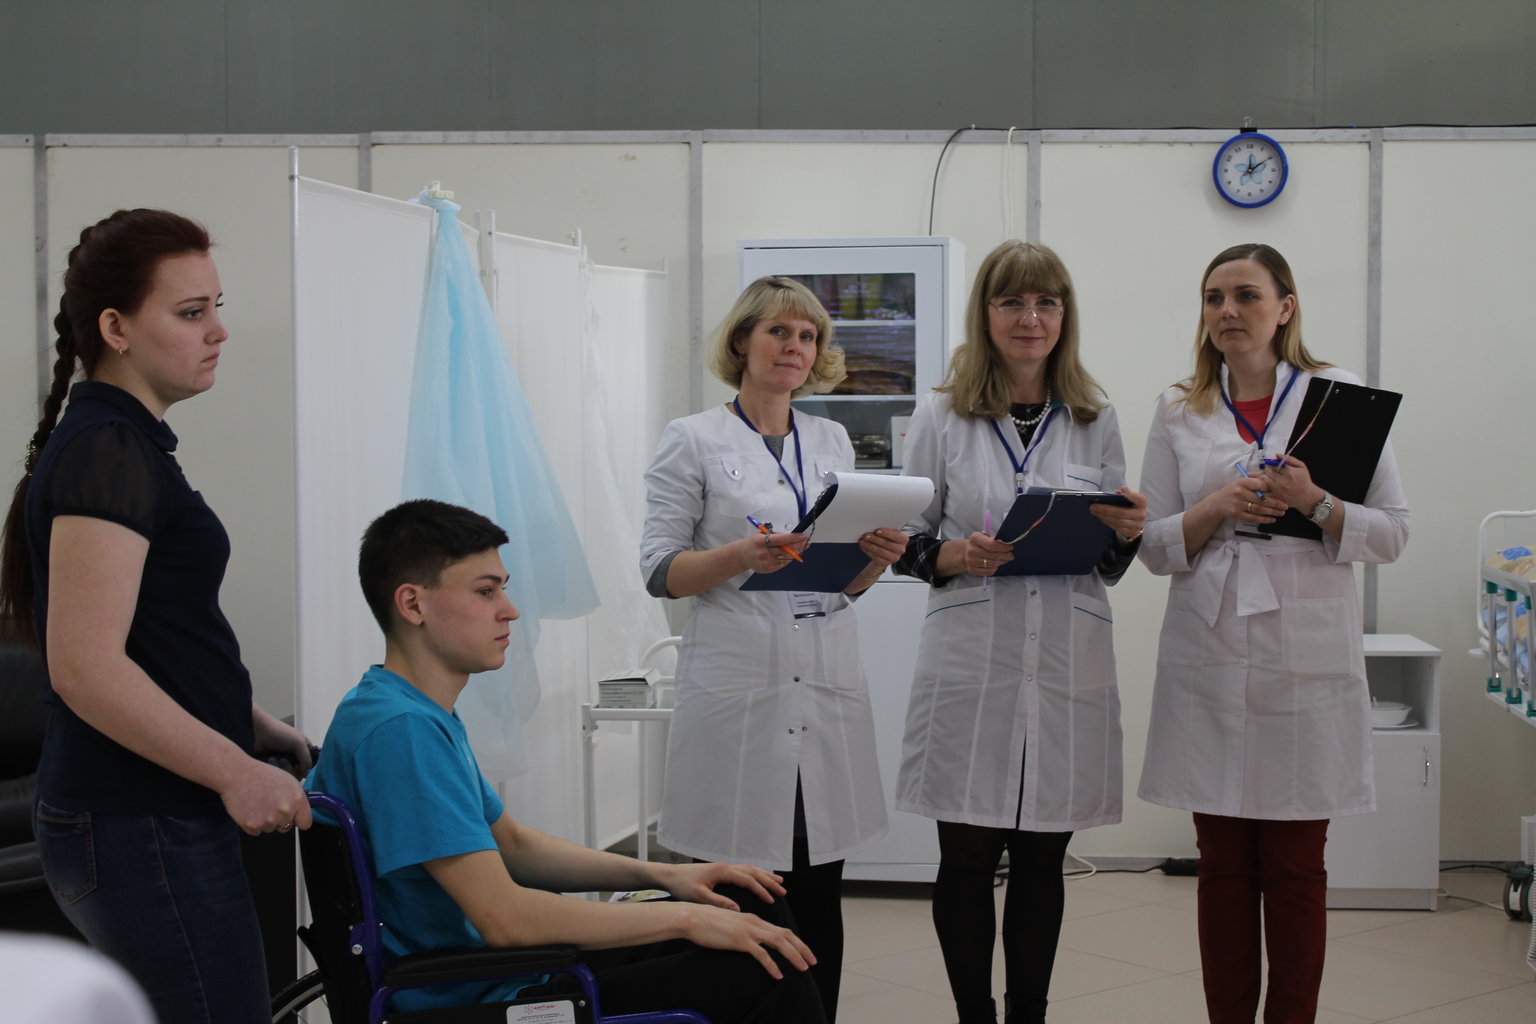 Сайт кировский медицинский университет